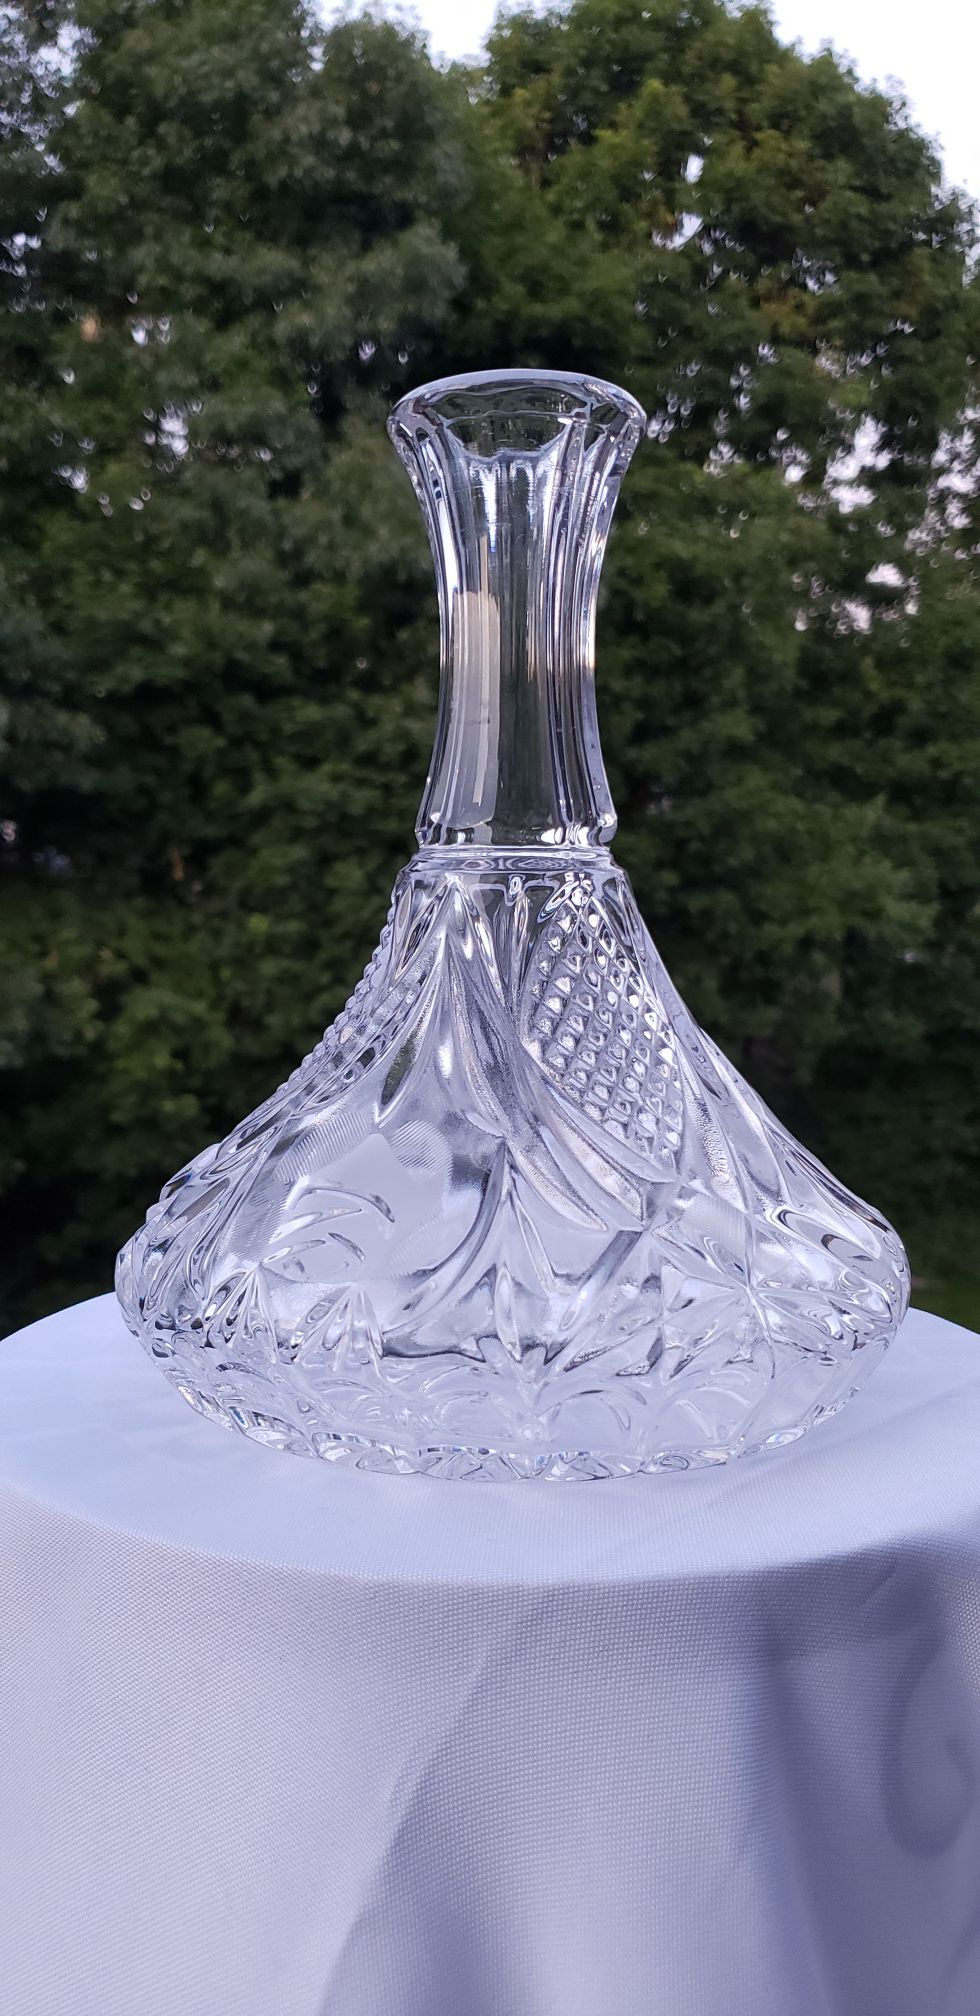 Cristal flower vase